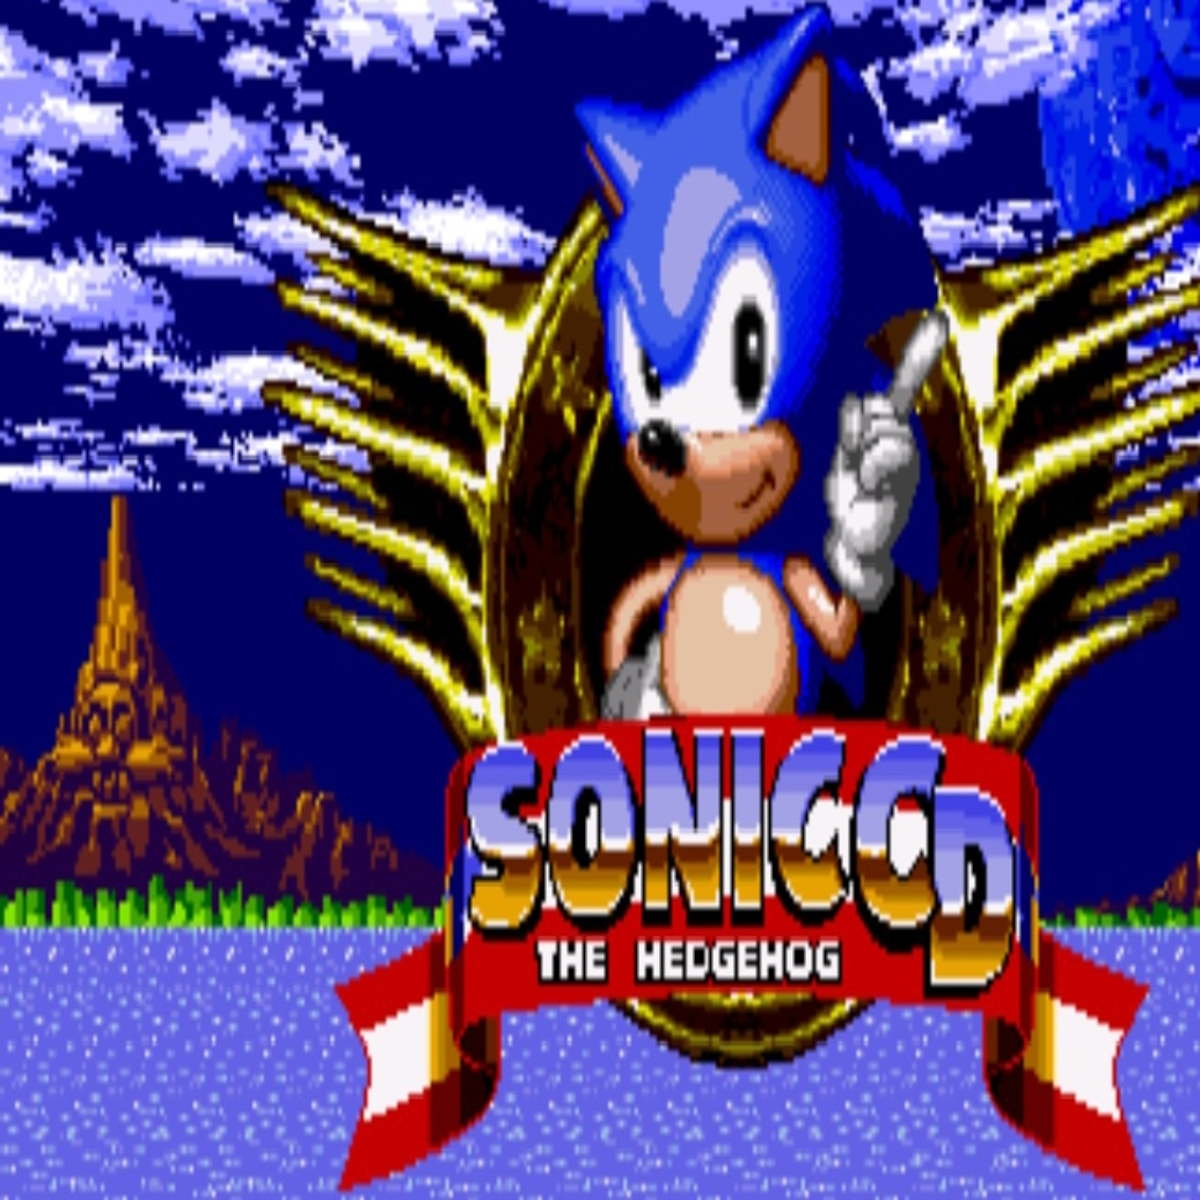 Sonic the Hedgehog 2 HD - Sonic Retro